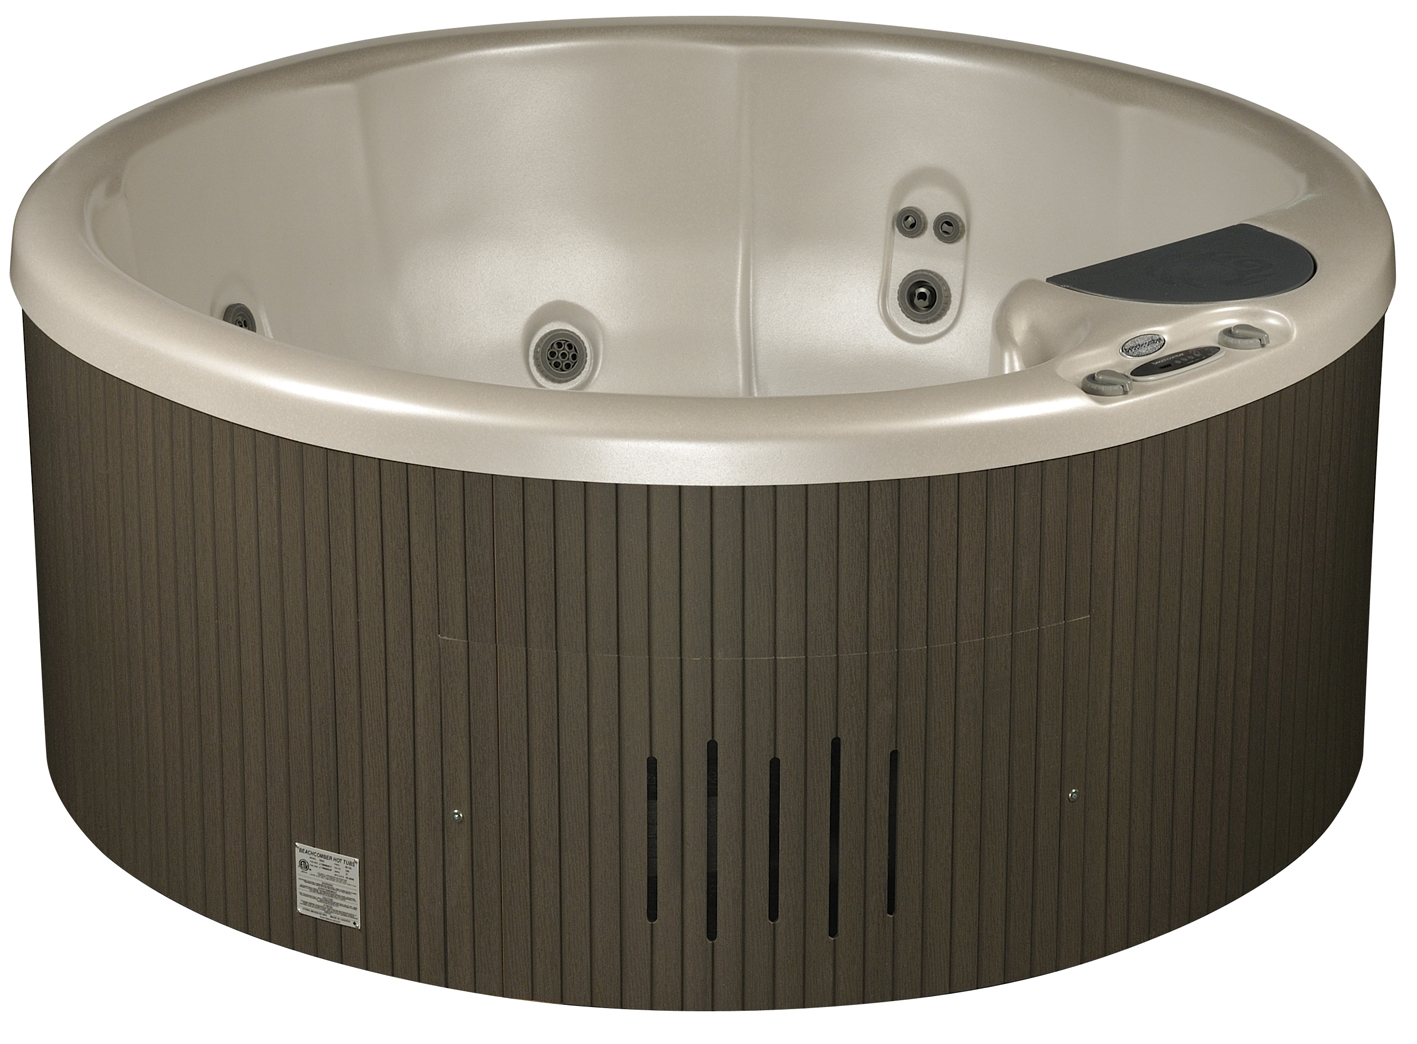 Compact circular hot tub